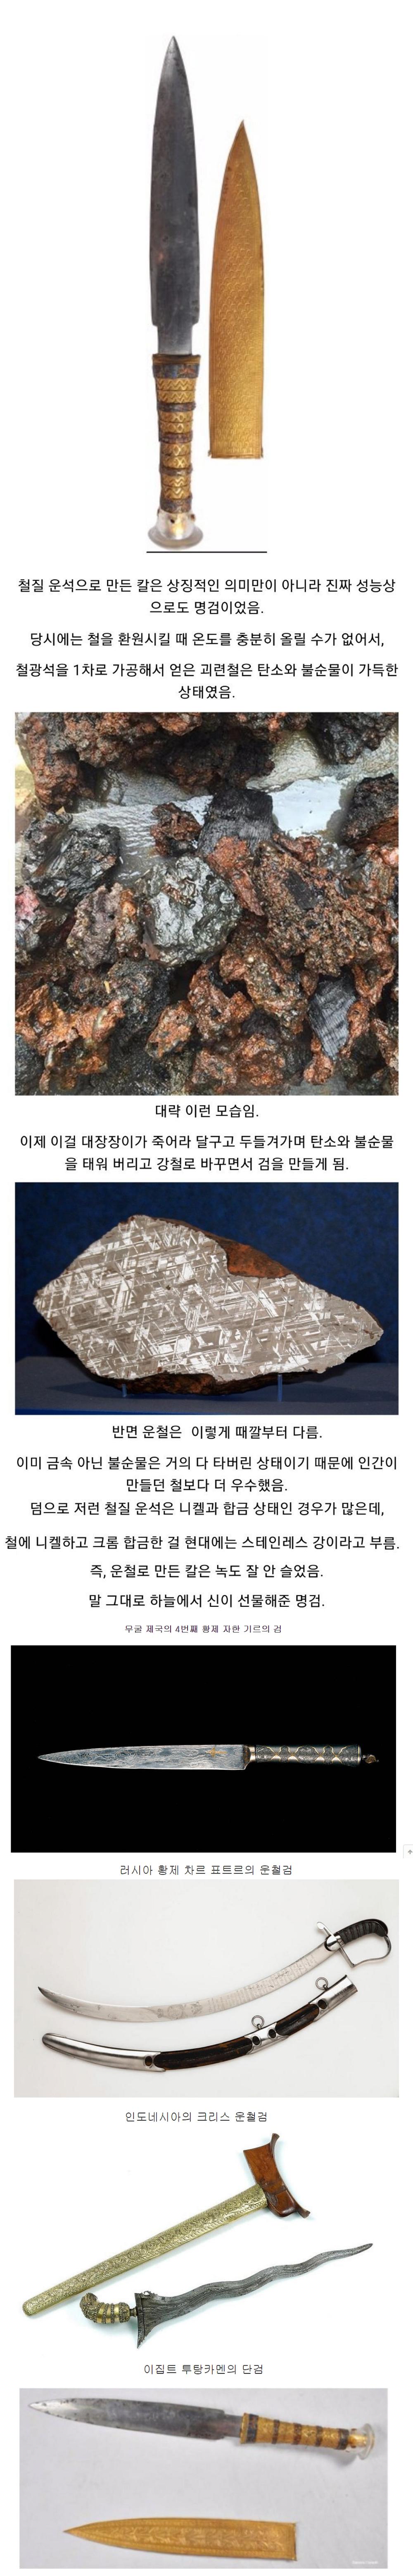 운석으로 만든 신비의 금속 운철 그리고 운철검.png.jpg